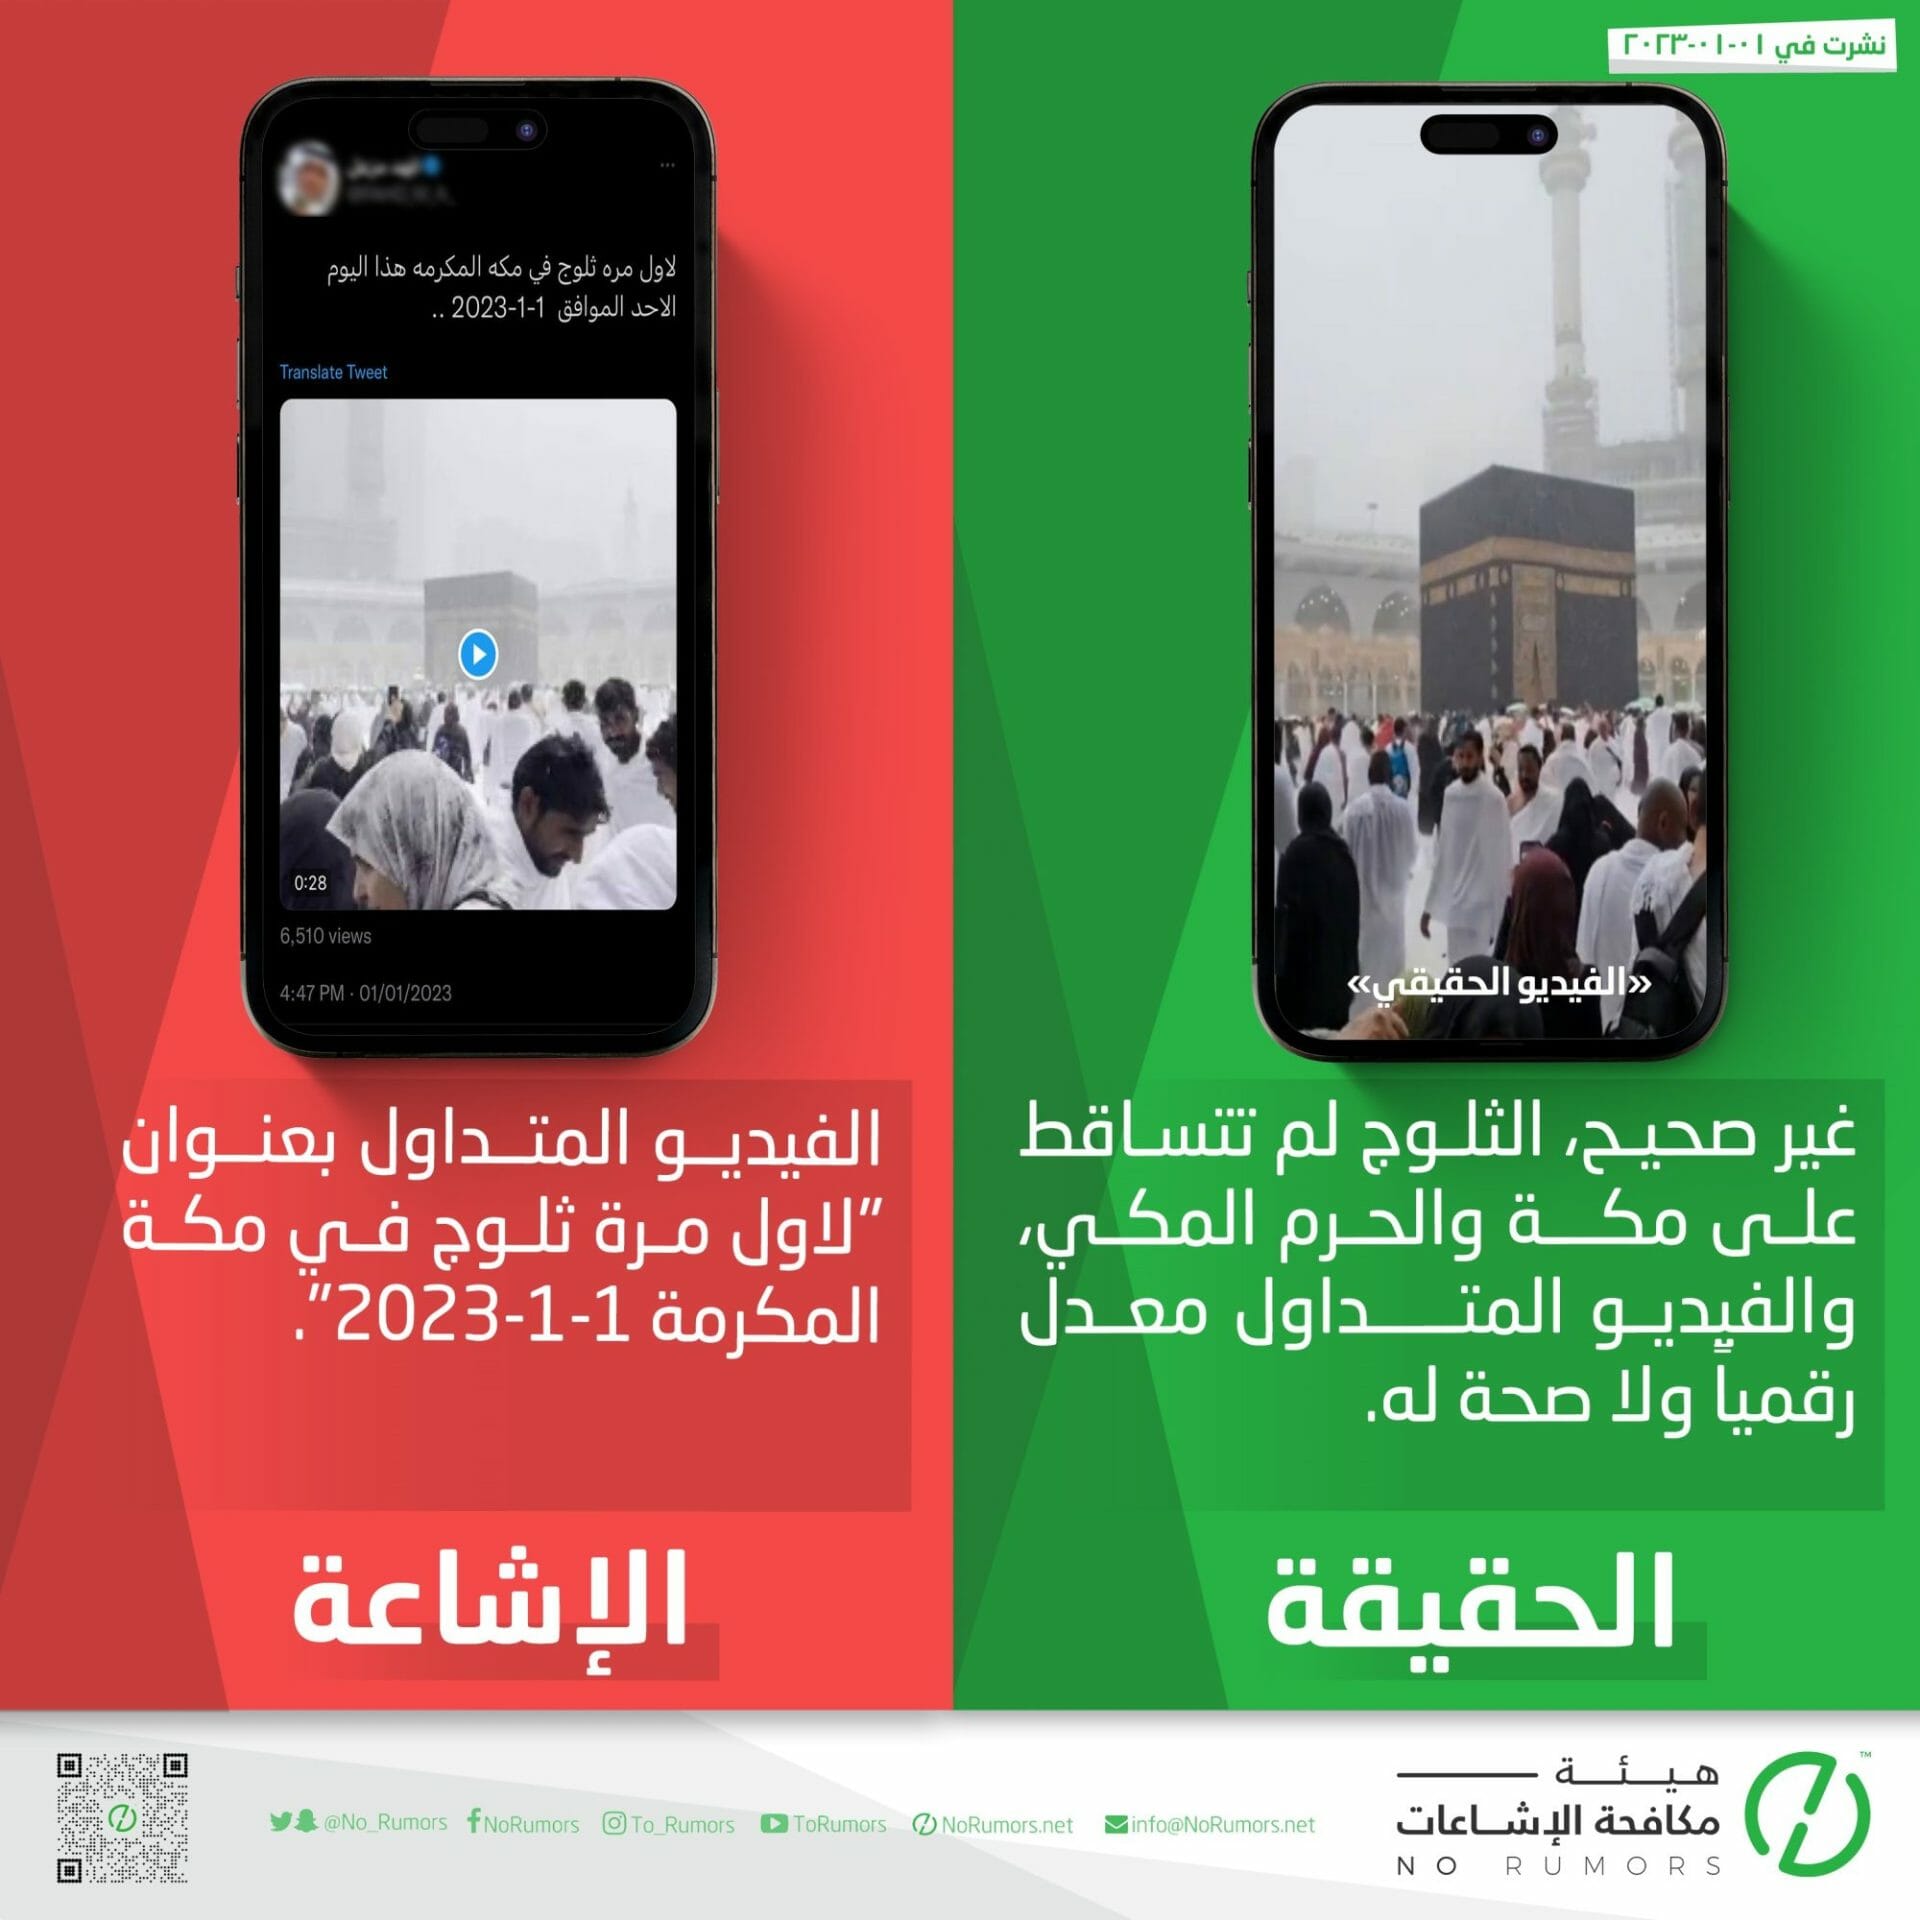 هيئة مكافحة الإشاعات تفند الفيديوهات المنتشرة عبر مواقع التواصل الاجتماعي لثلوج مكة والكعبة المشرفة وتؤكد أنها معدلة رقميا